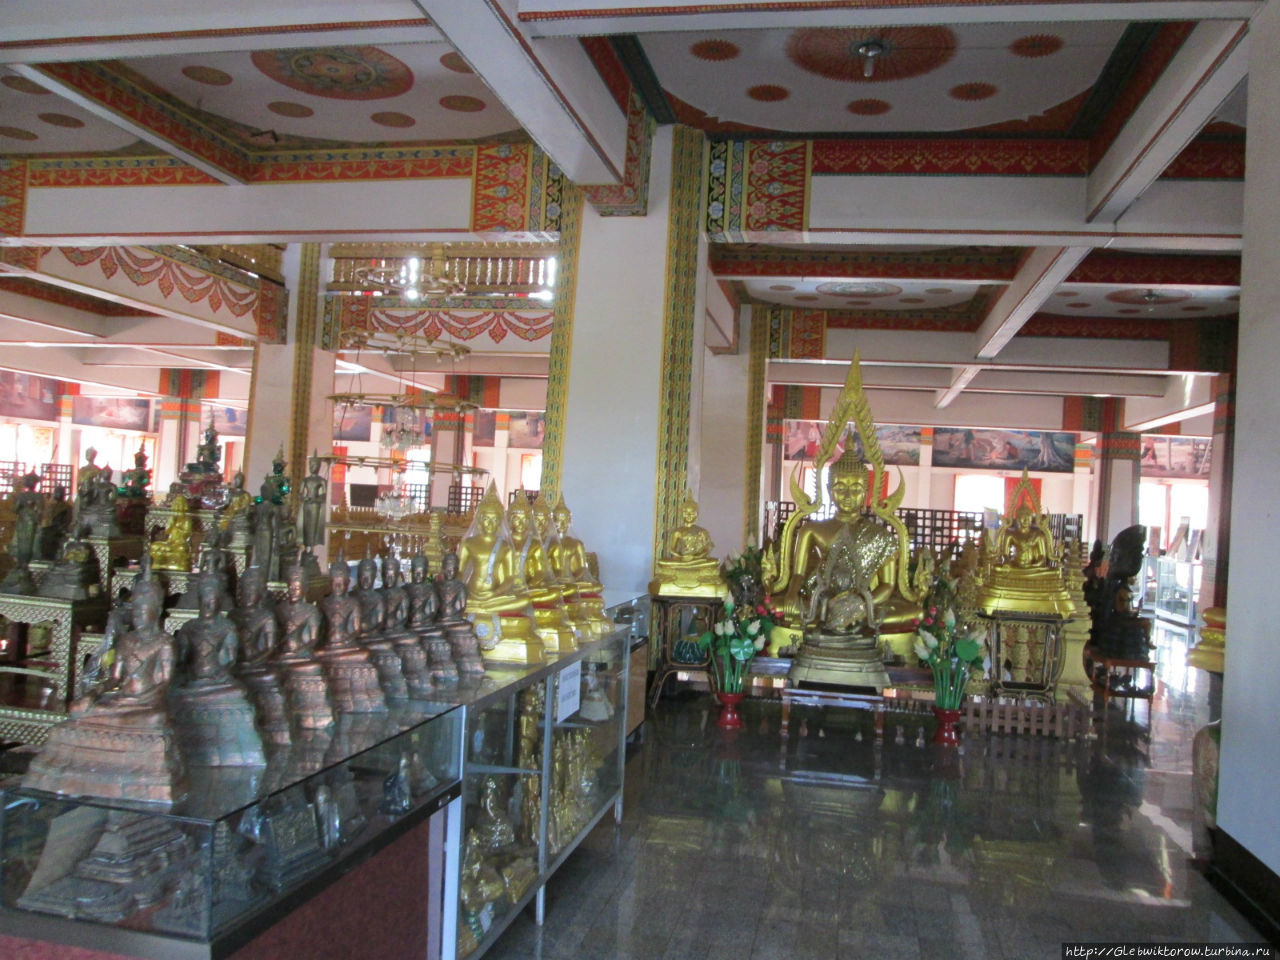 Wat Nong Waeng Muang Kao Museum